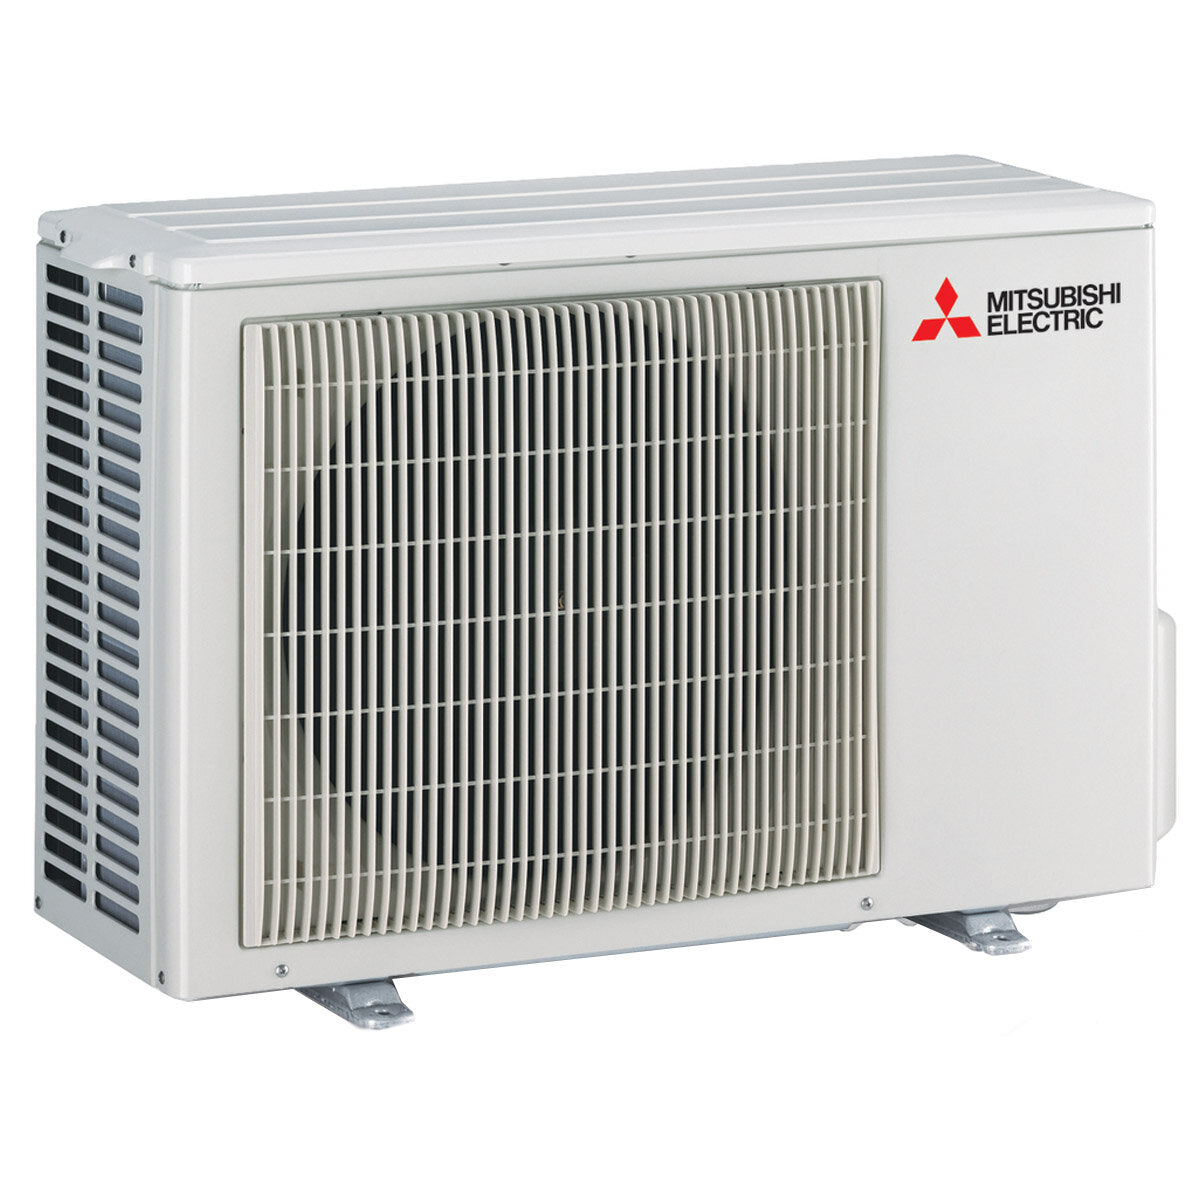 Mitsubishi Electric Klimaanlage AY-Serie Dual Split 9000+18000 BTU Inverter A++ WLAN-Außeneinheit 5,3 kW